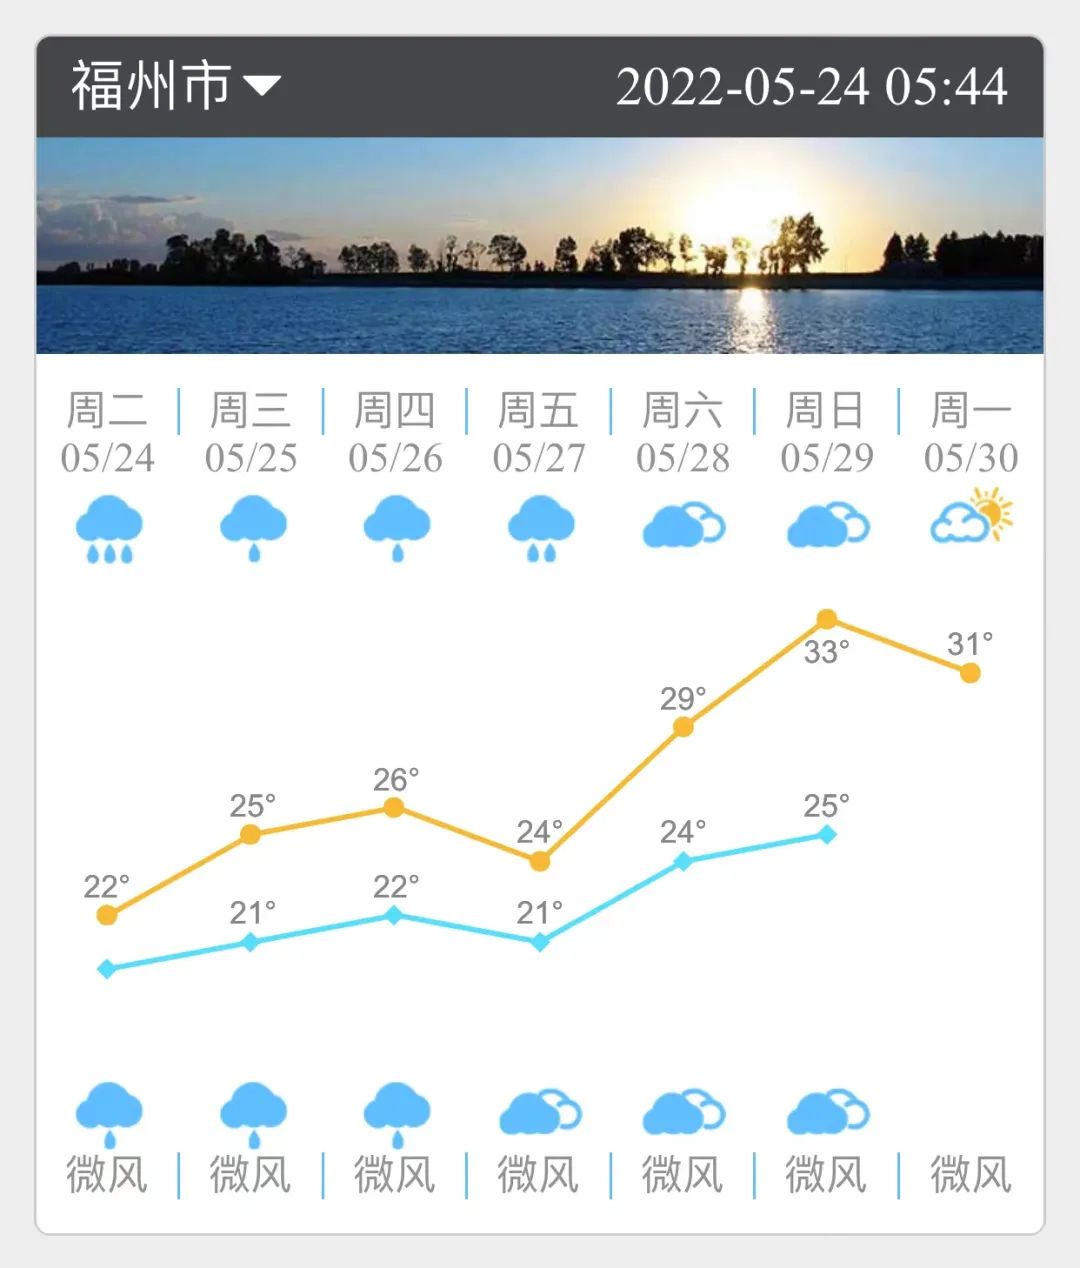 福州未来三天雨势减弱 气温在波动中回升